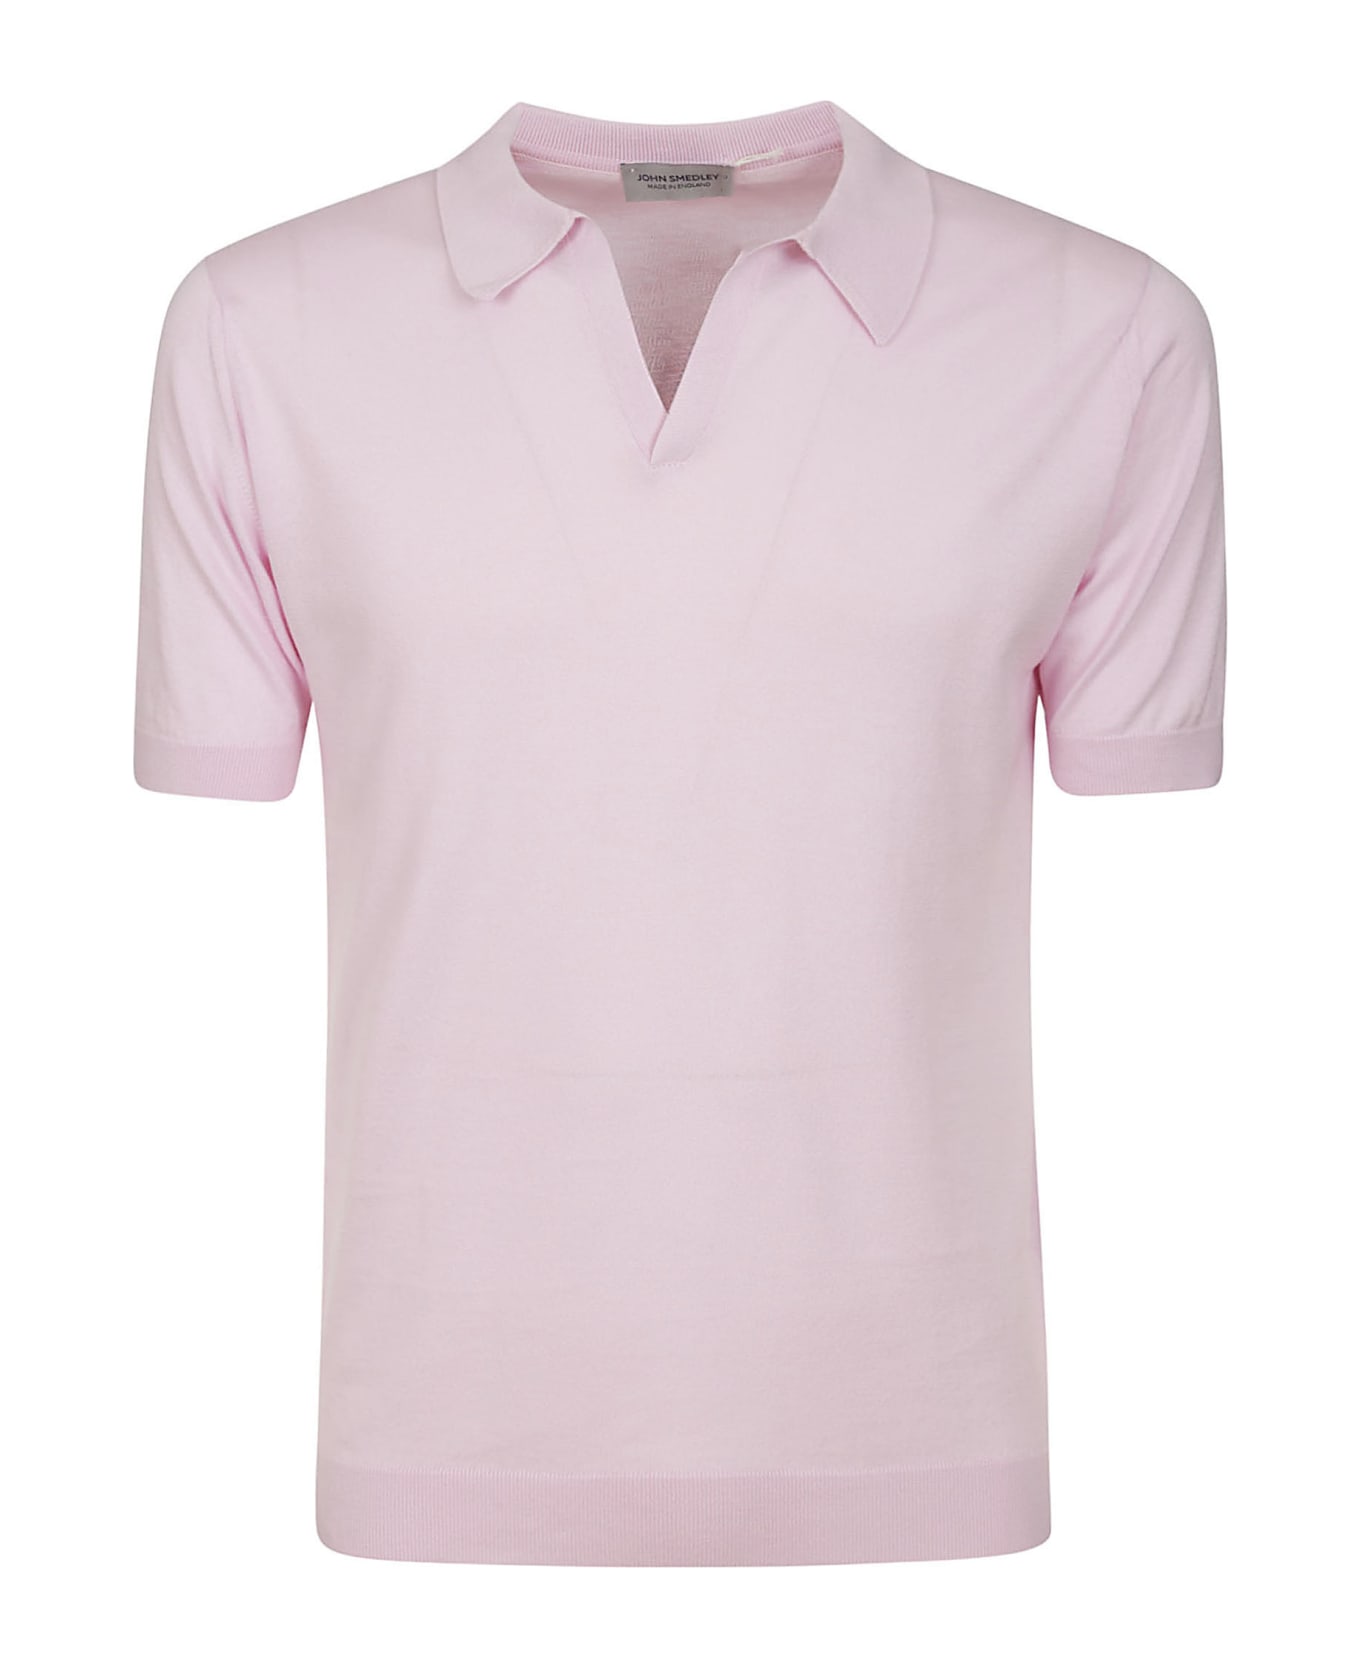 John Smedley Noah Skipper Collar Shirt Ss - Mallow Pink ポロシャツ